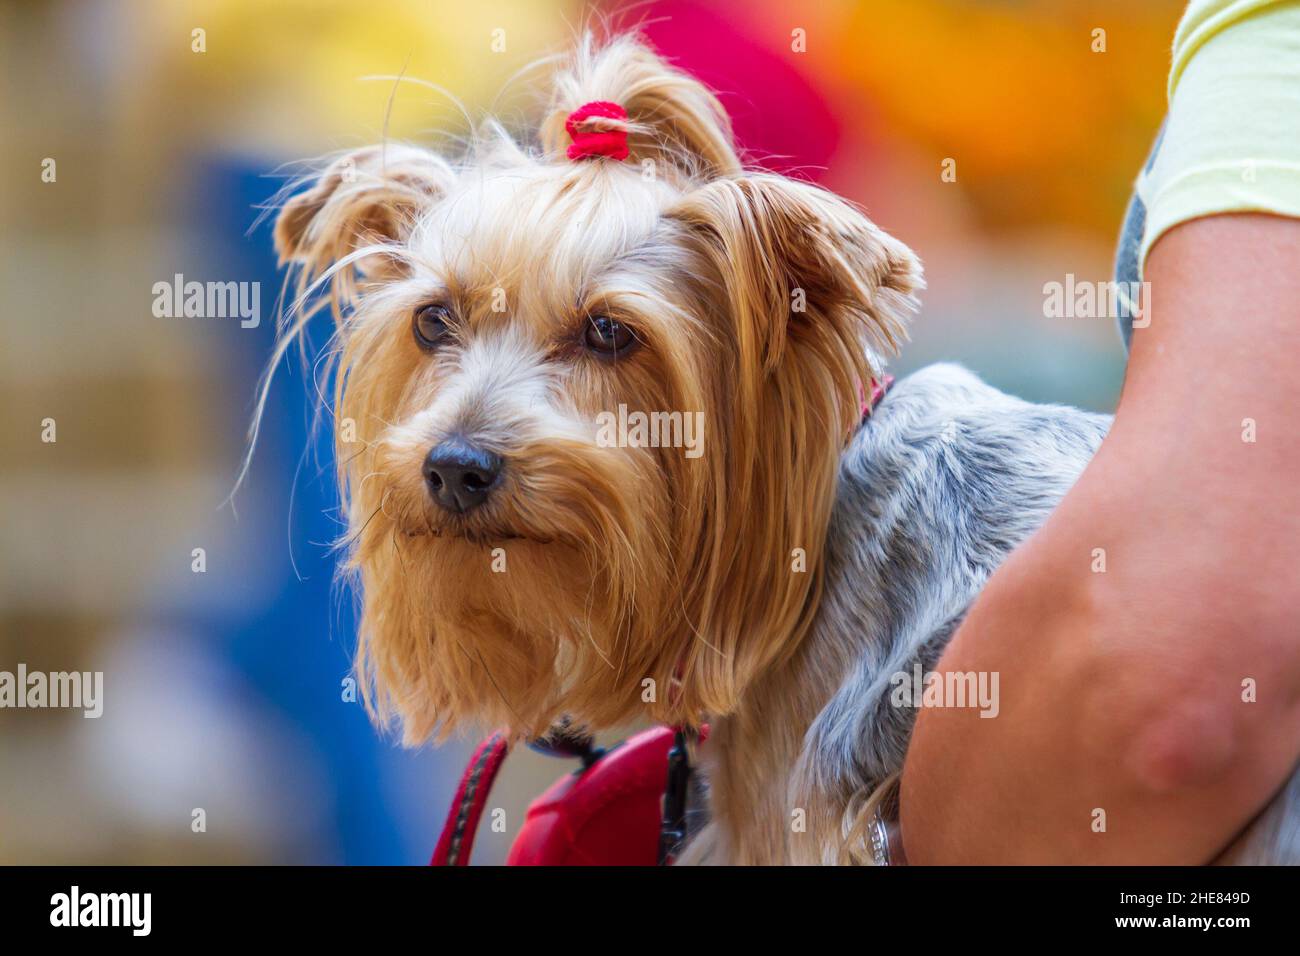 Ein kleiner pelzigen Hund mit einem roten Bogen liegt in seinen Armen. Stockfoto